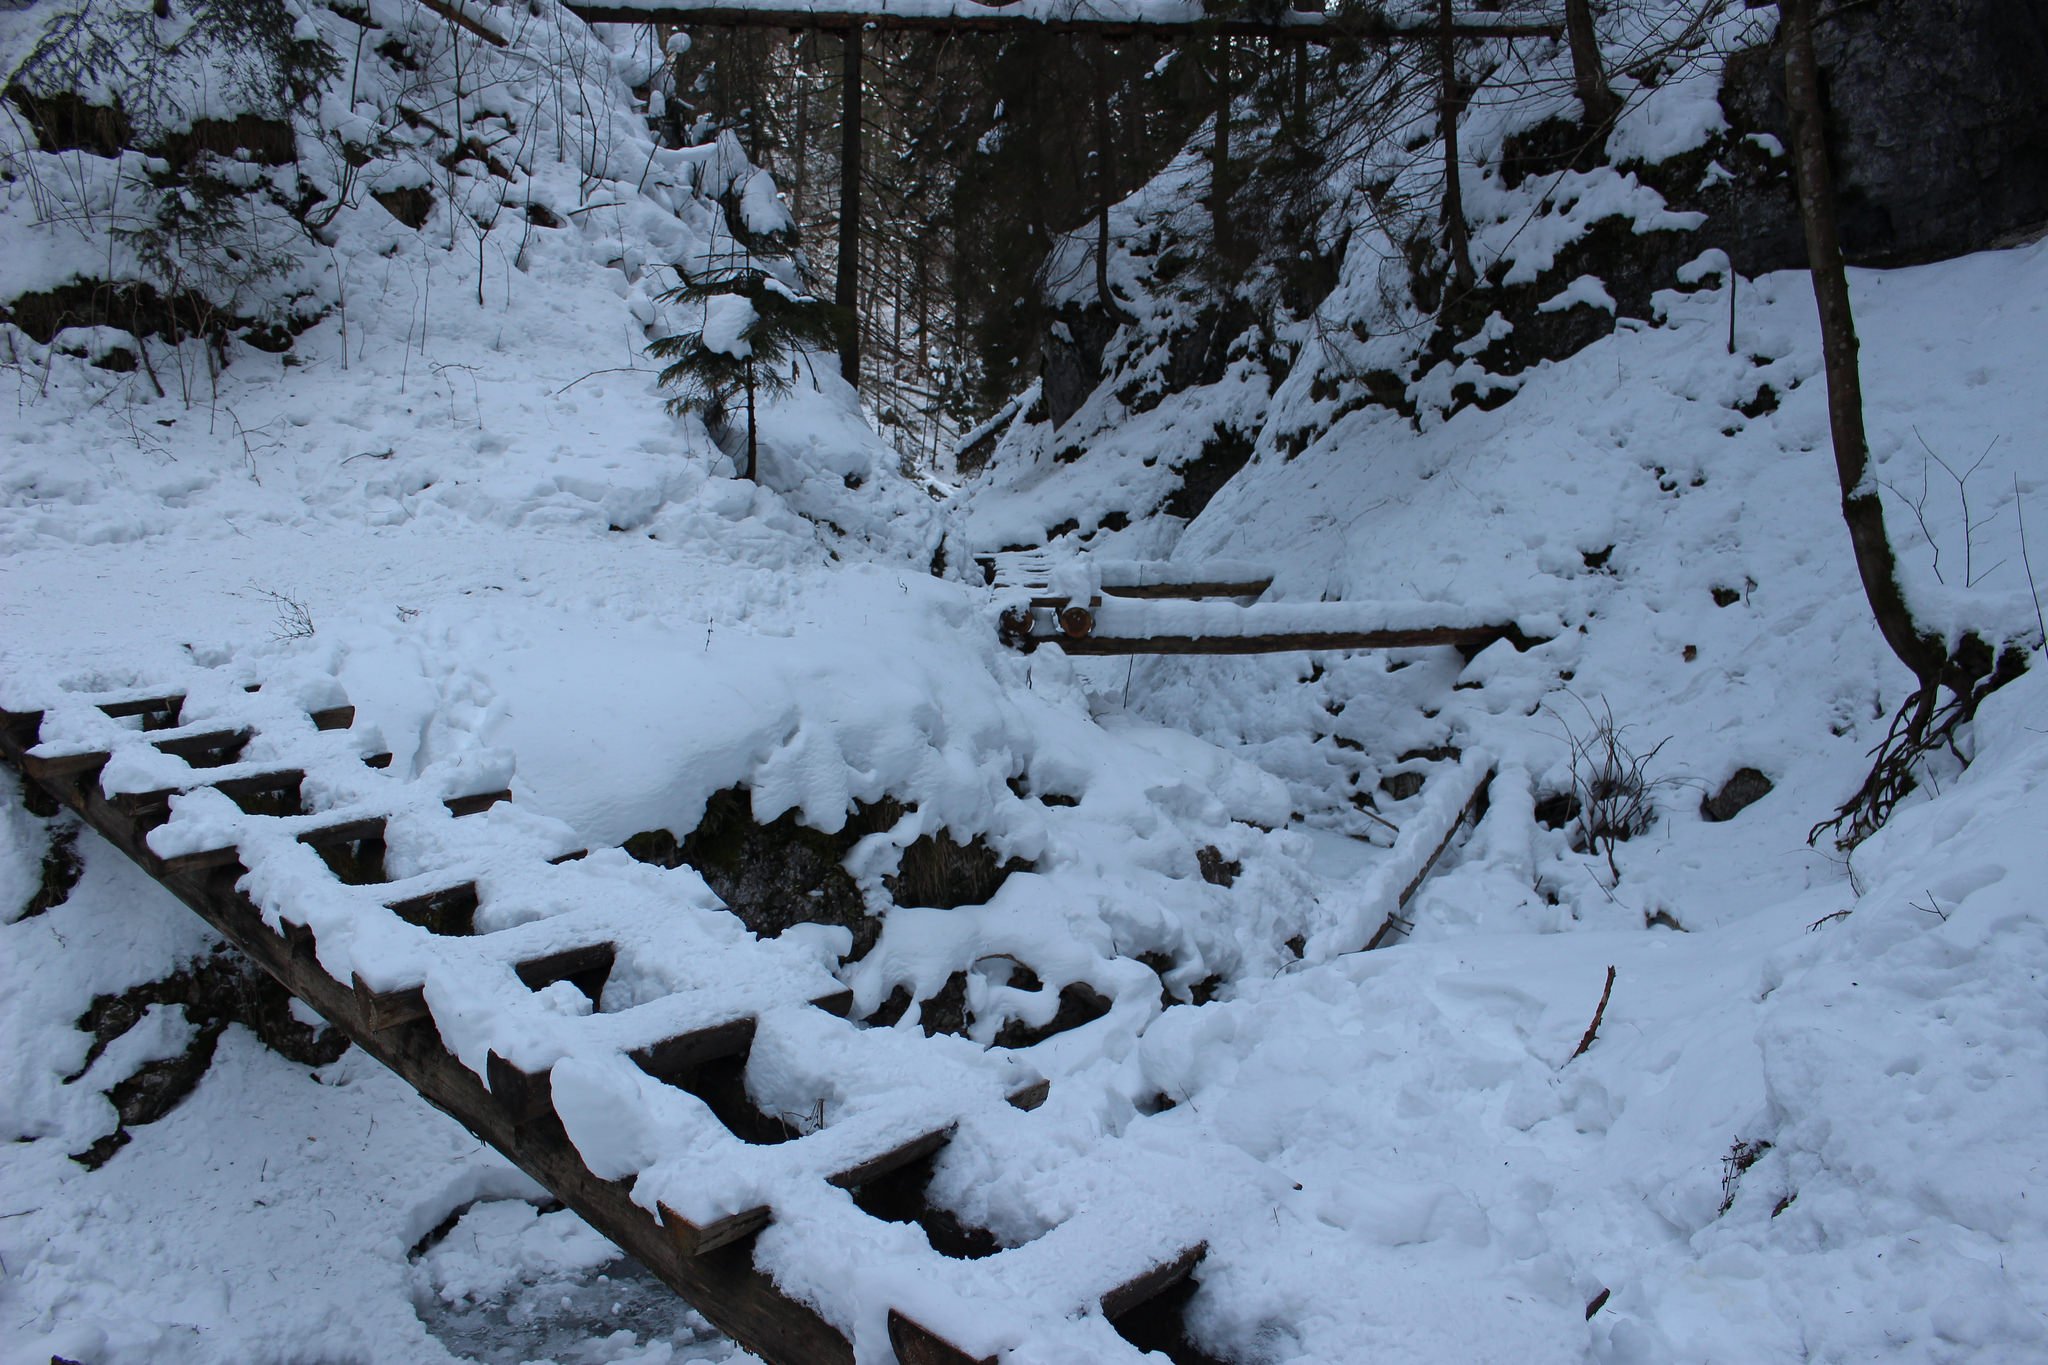 Suchá Belá gorge, winter hiking trip, Košice region, Slovakia – 2